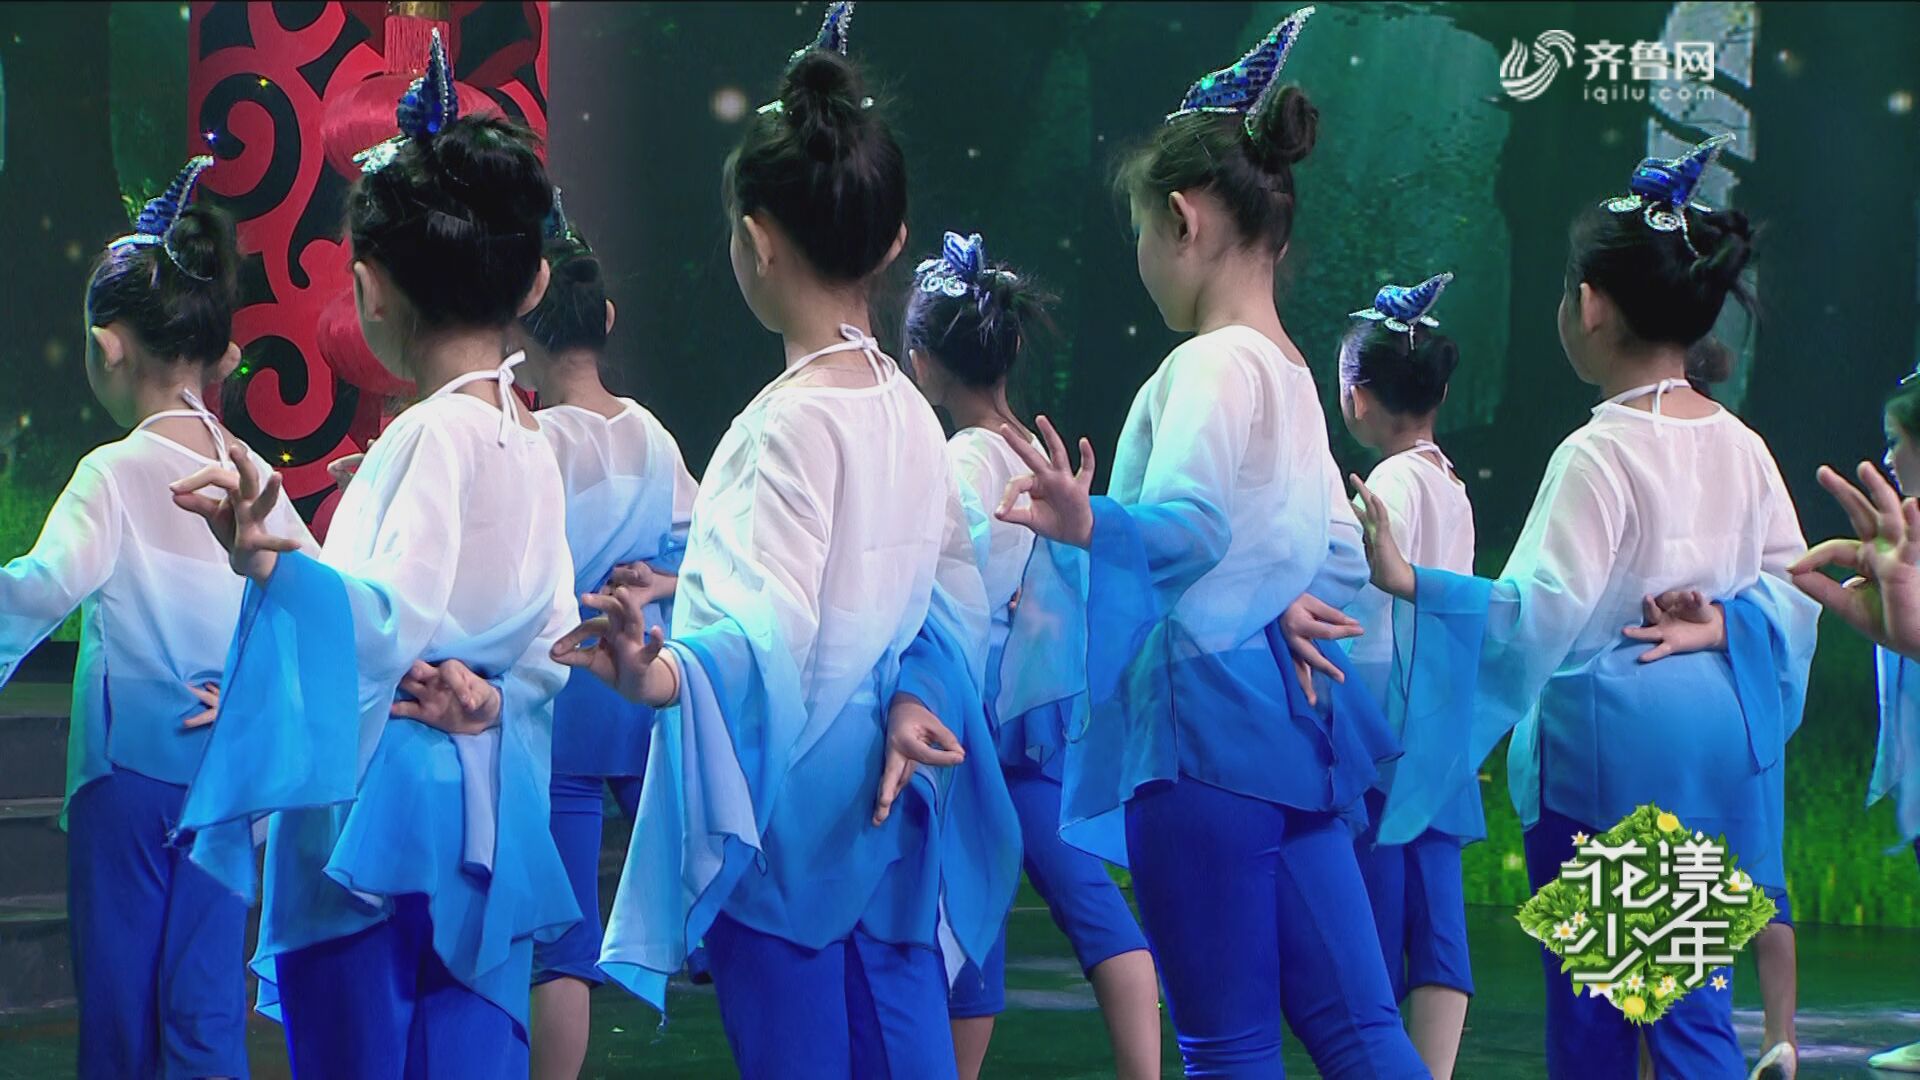 舞蹈《喜鹊喳喳喳》——2019山东广播电视台少儿春节大联欢优秀节目展播